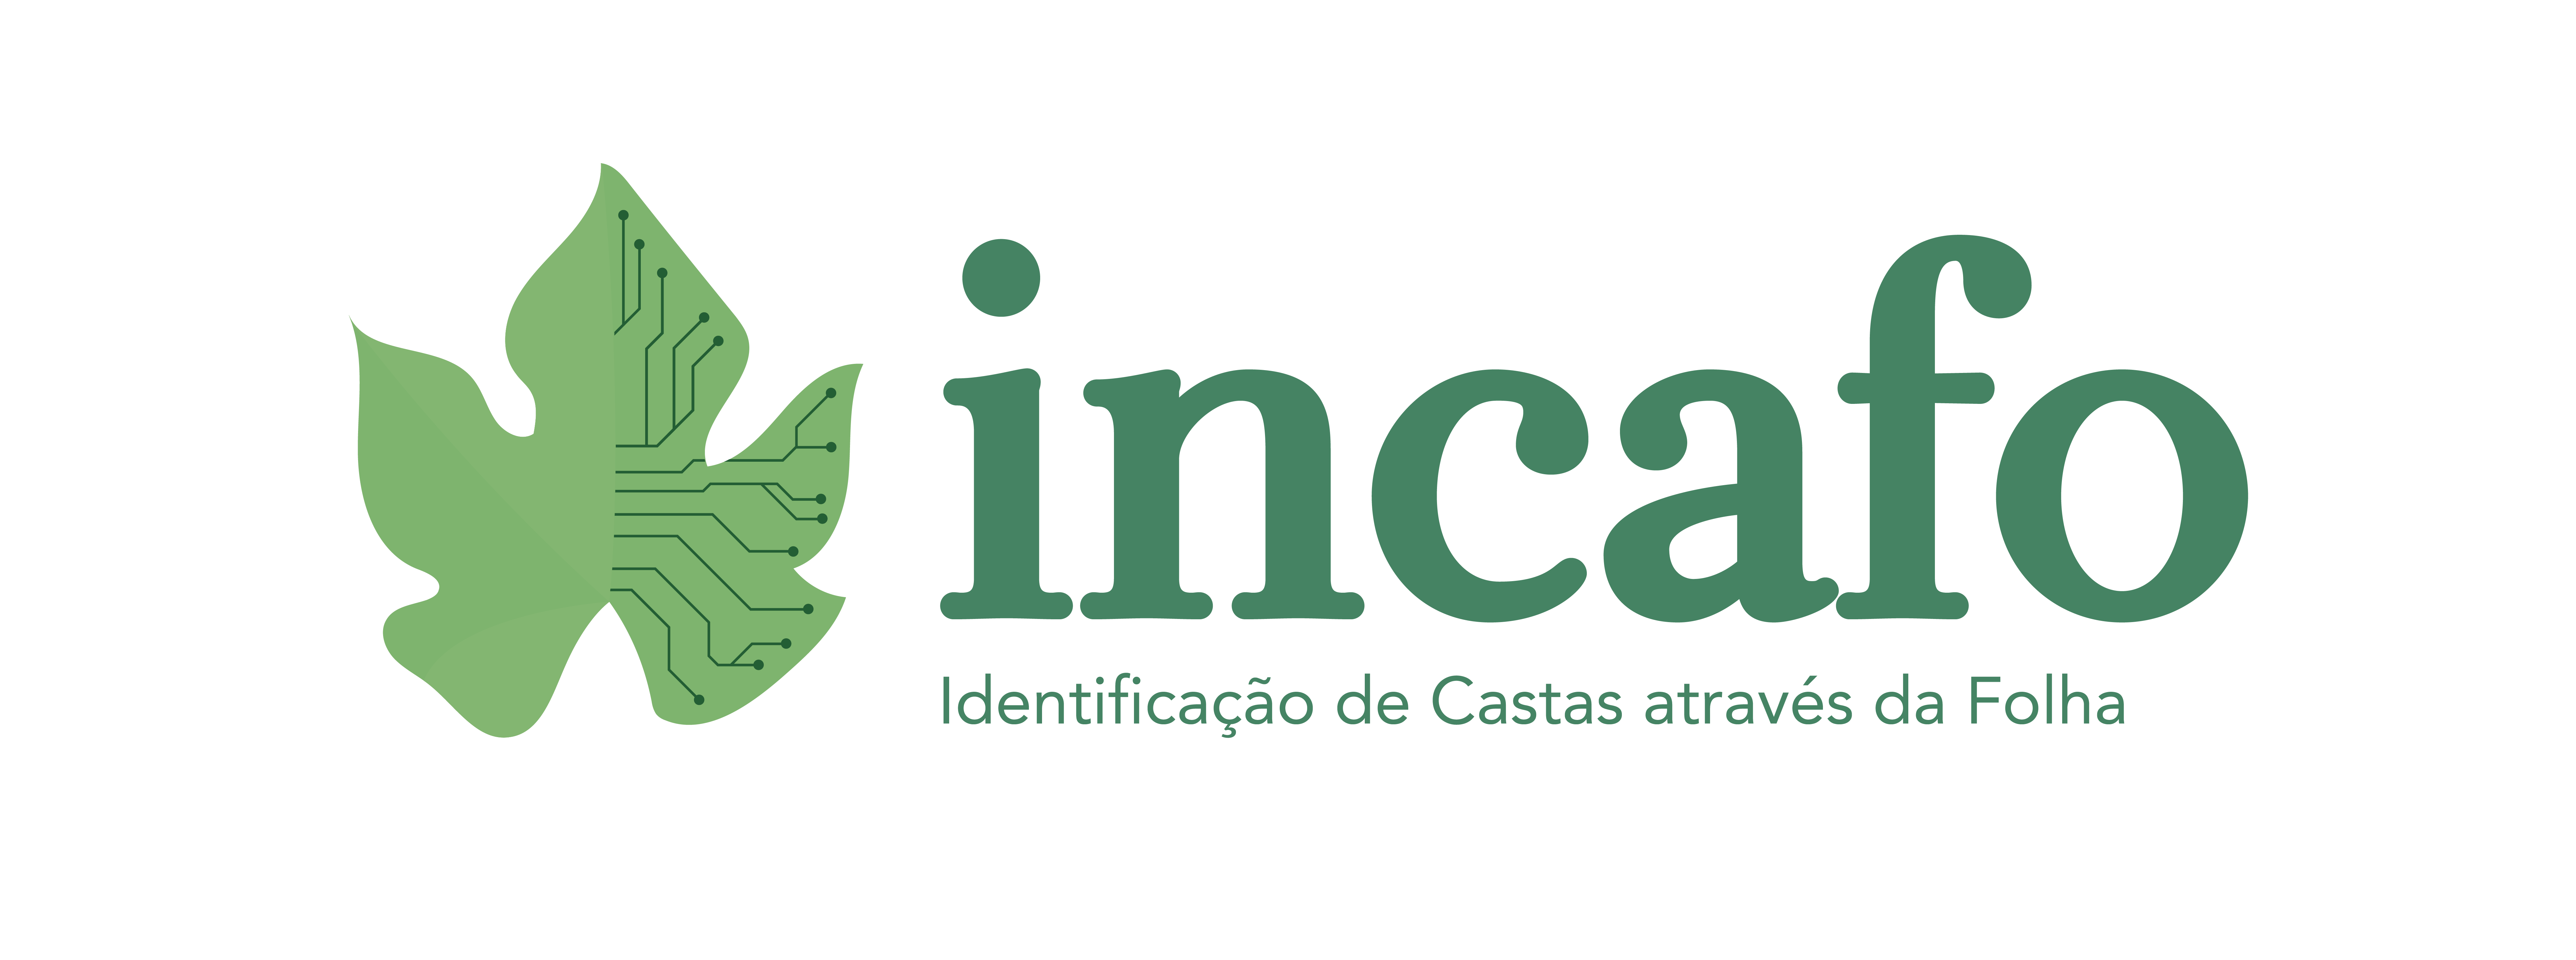 Logotipo Incafo